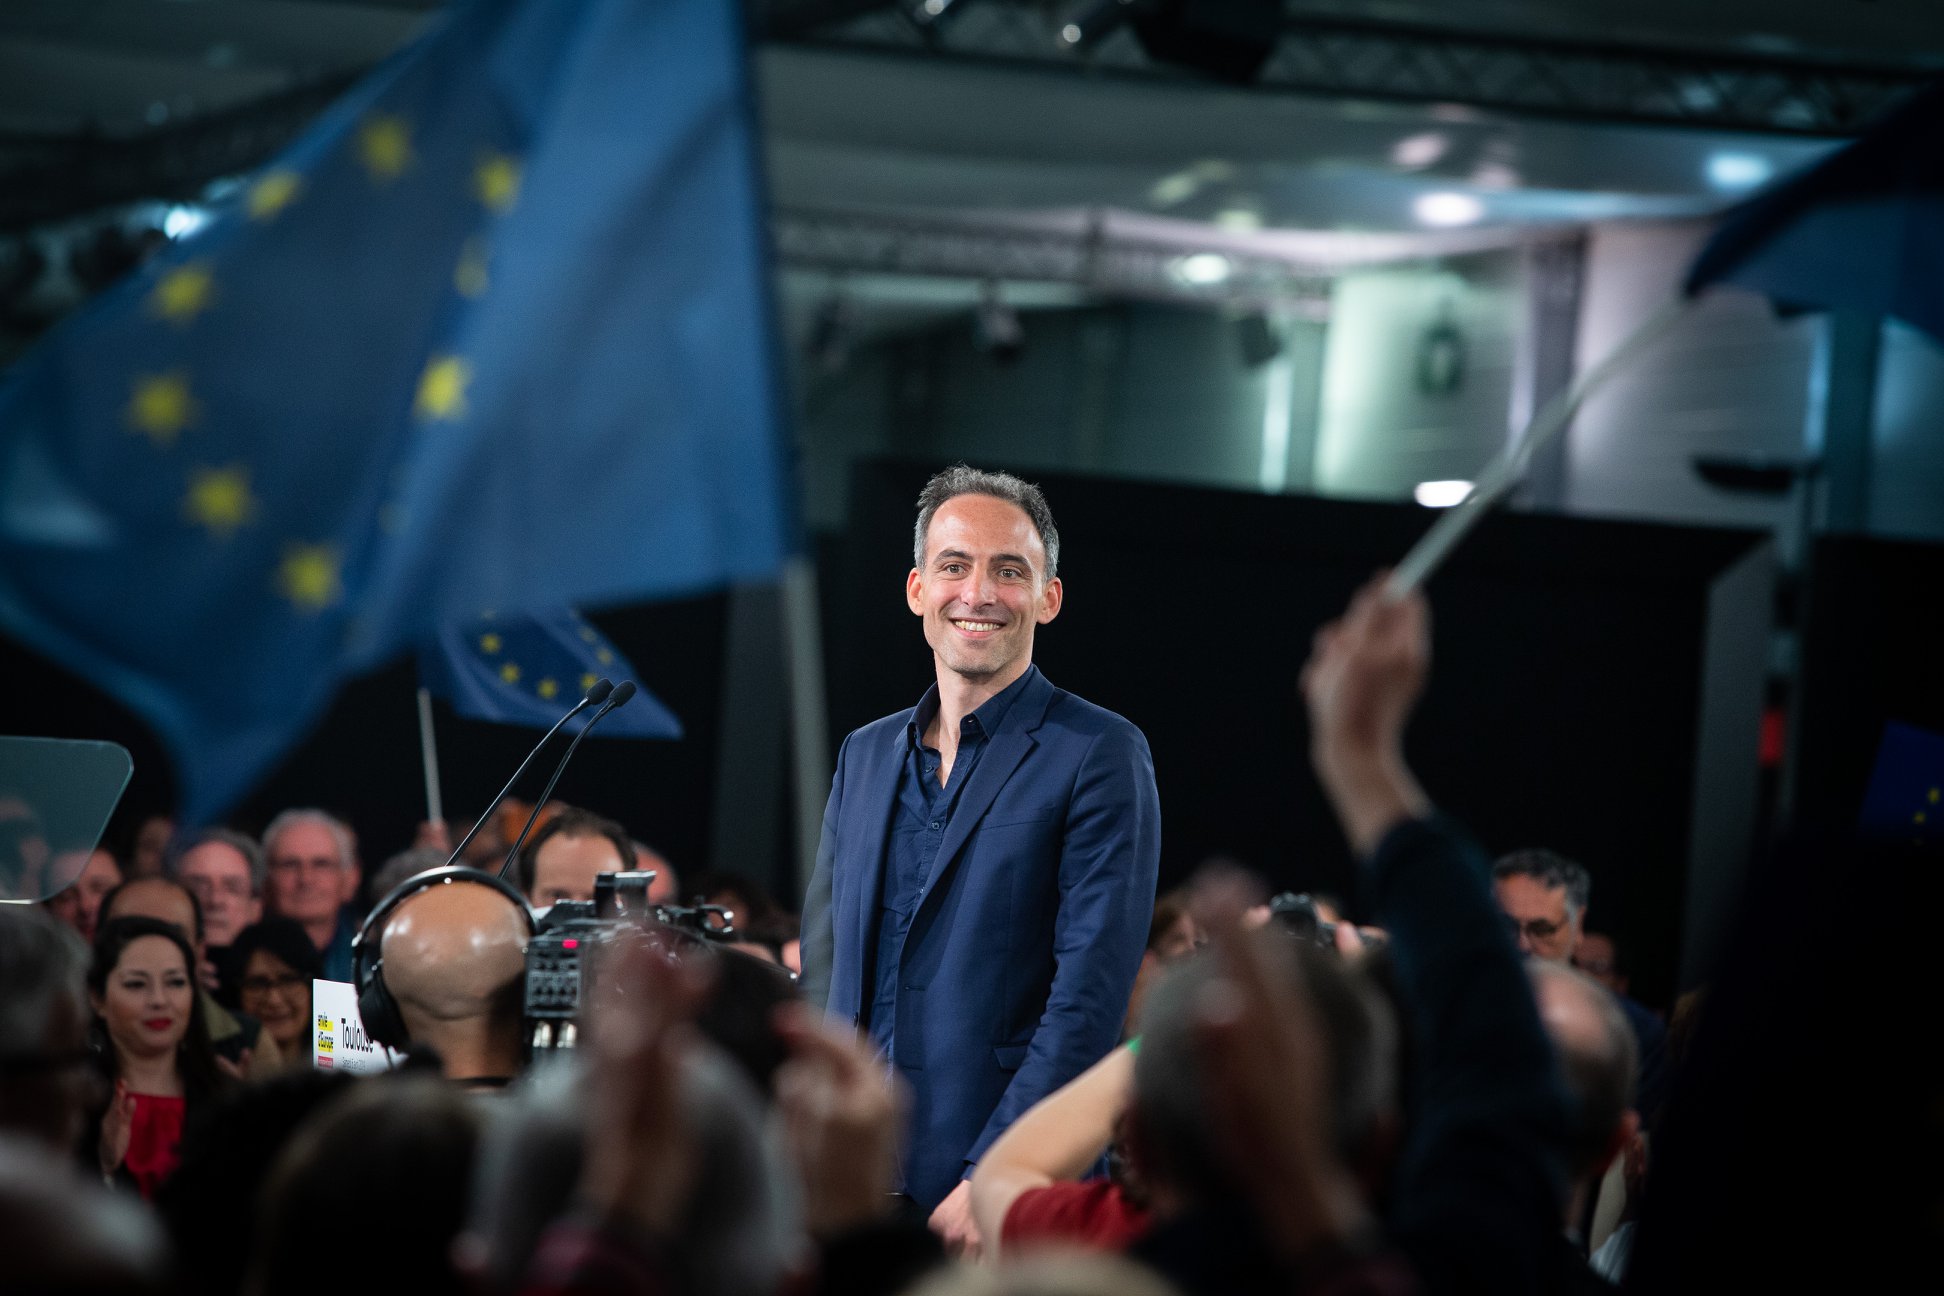 Européennes 2019: Le candidat Raphaël Glucksmann à La Réunion les 26 et 27 avril prochain